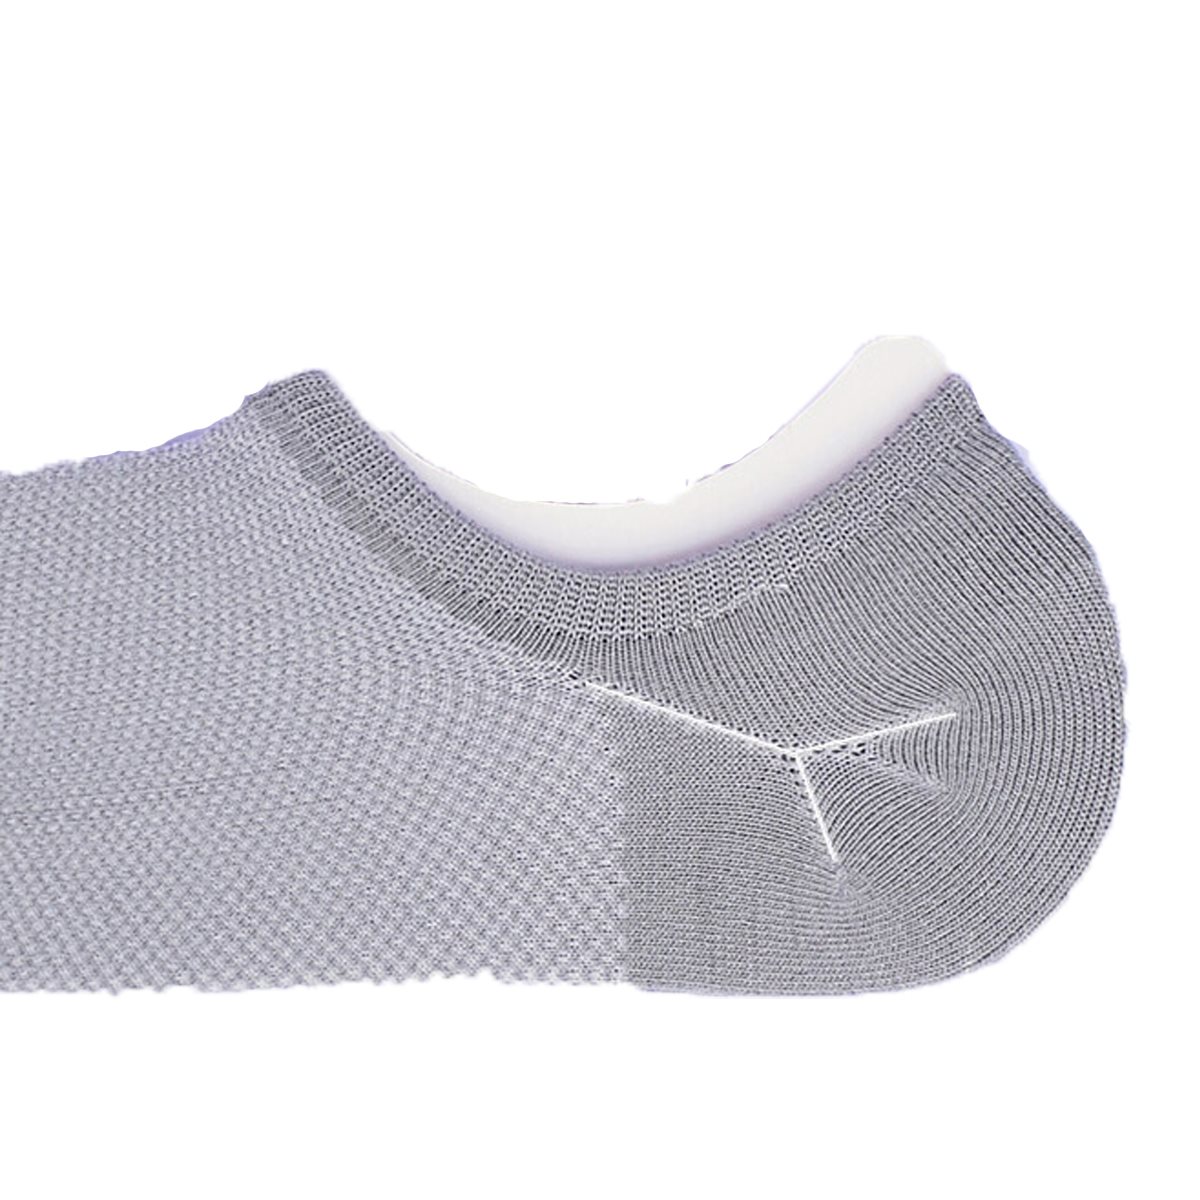 10 Kinds Style Casual Socks For Male Breathable Cotton Men Non Slip Short Bamboo Fiber Socks